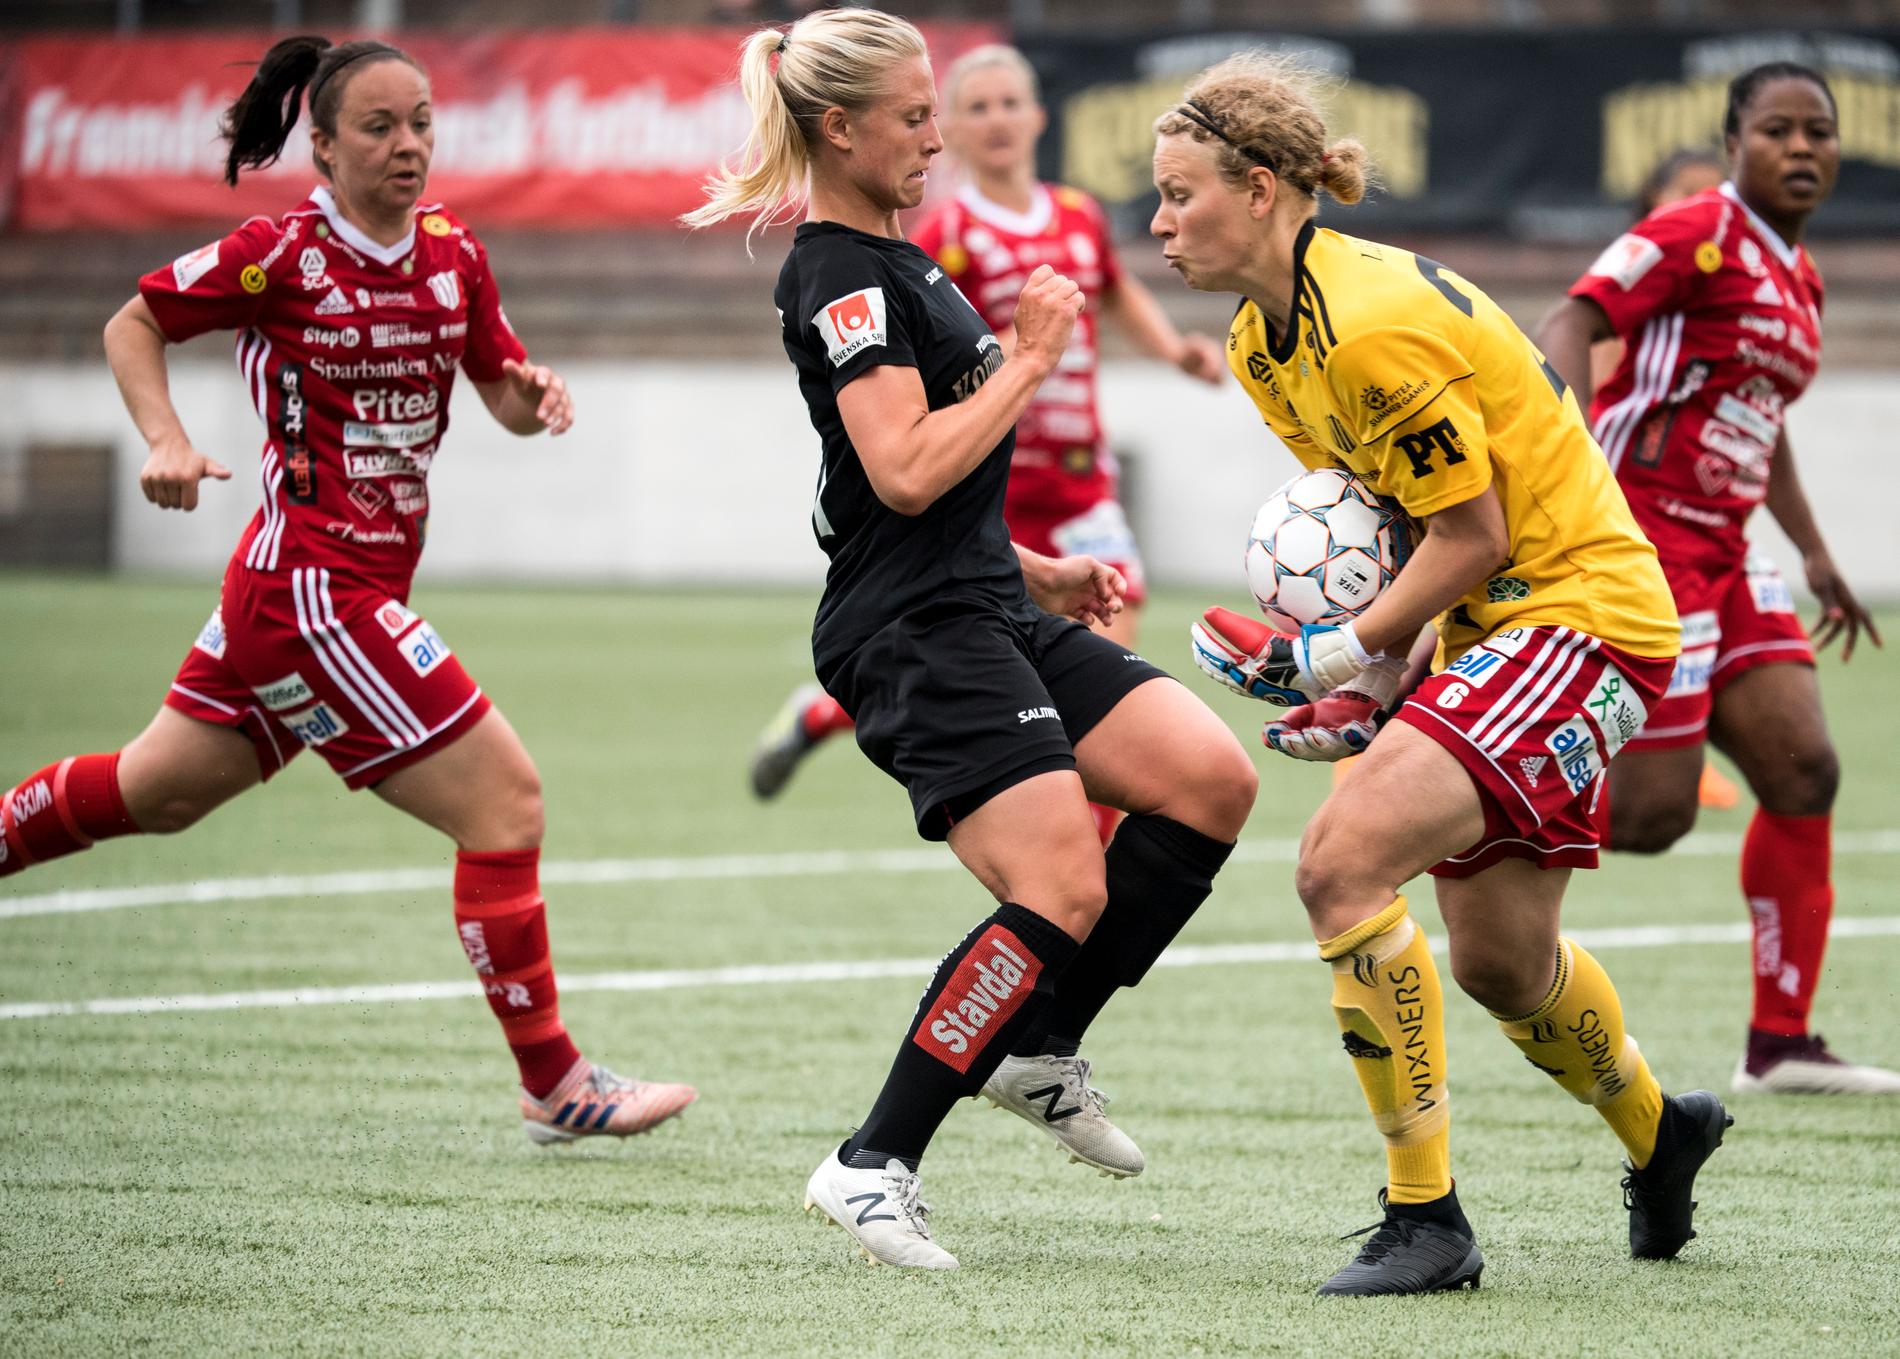 Piteås målvakt Cajsa Andersson kan ta sitt tredje raka SM-guld sedan hon blivit svensk mästare med Linköping 2016 och 2017. Här i det damallsvenska bortamötet med Göteborg tidigare i år.